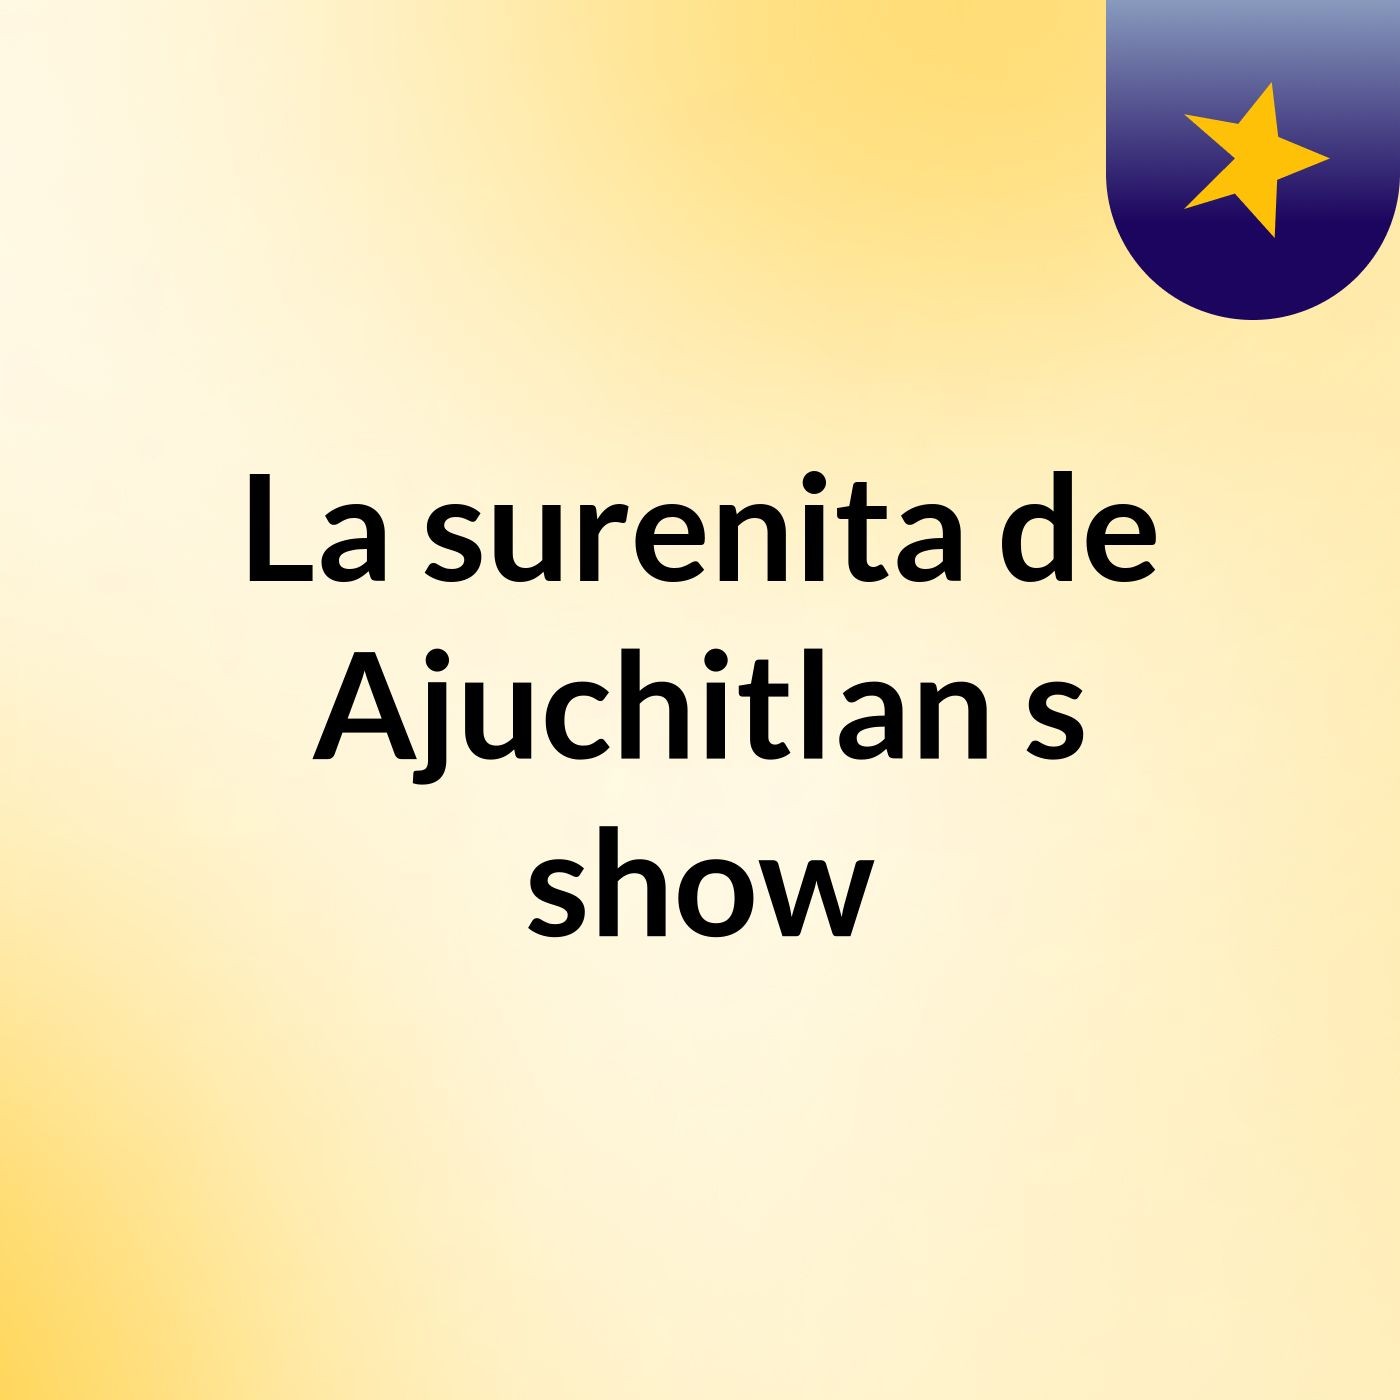 La surenita de Ajuchitlan's show